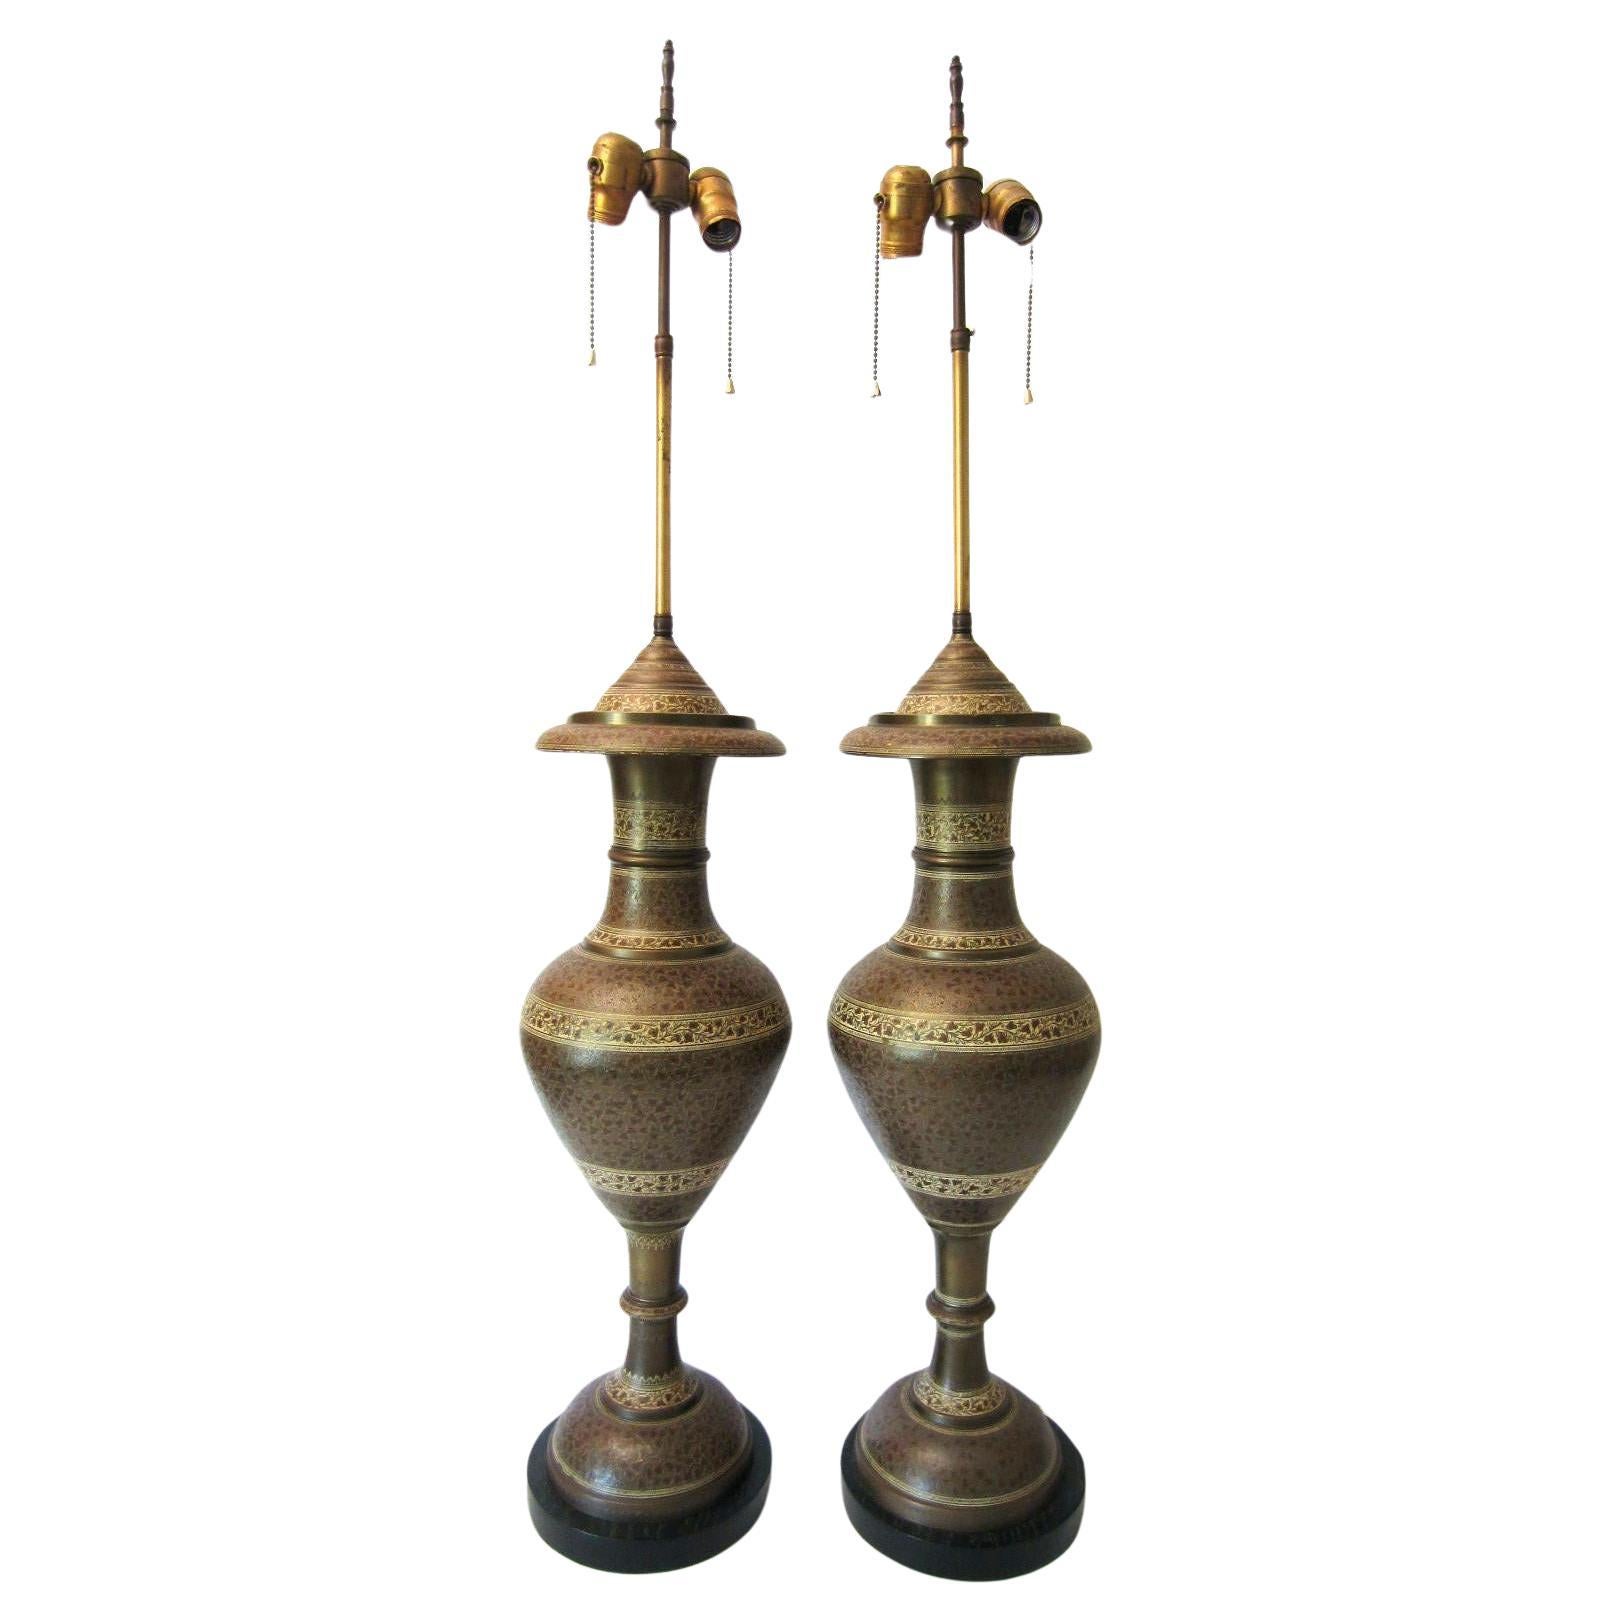 Grande paire de lampes de table en forme d'urne en laiton ciselé à la main, datant de l'époque Art Déco.
Les urnes sont montées sur un socle en bois ébonisé.
Douilles à double standard pour chaque ampoule. État exceptionnel.
